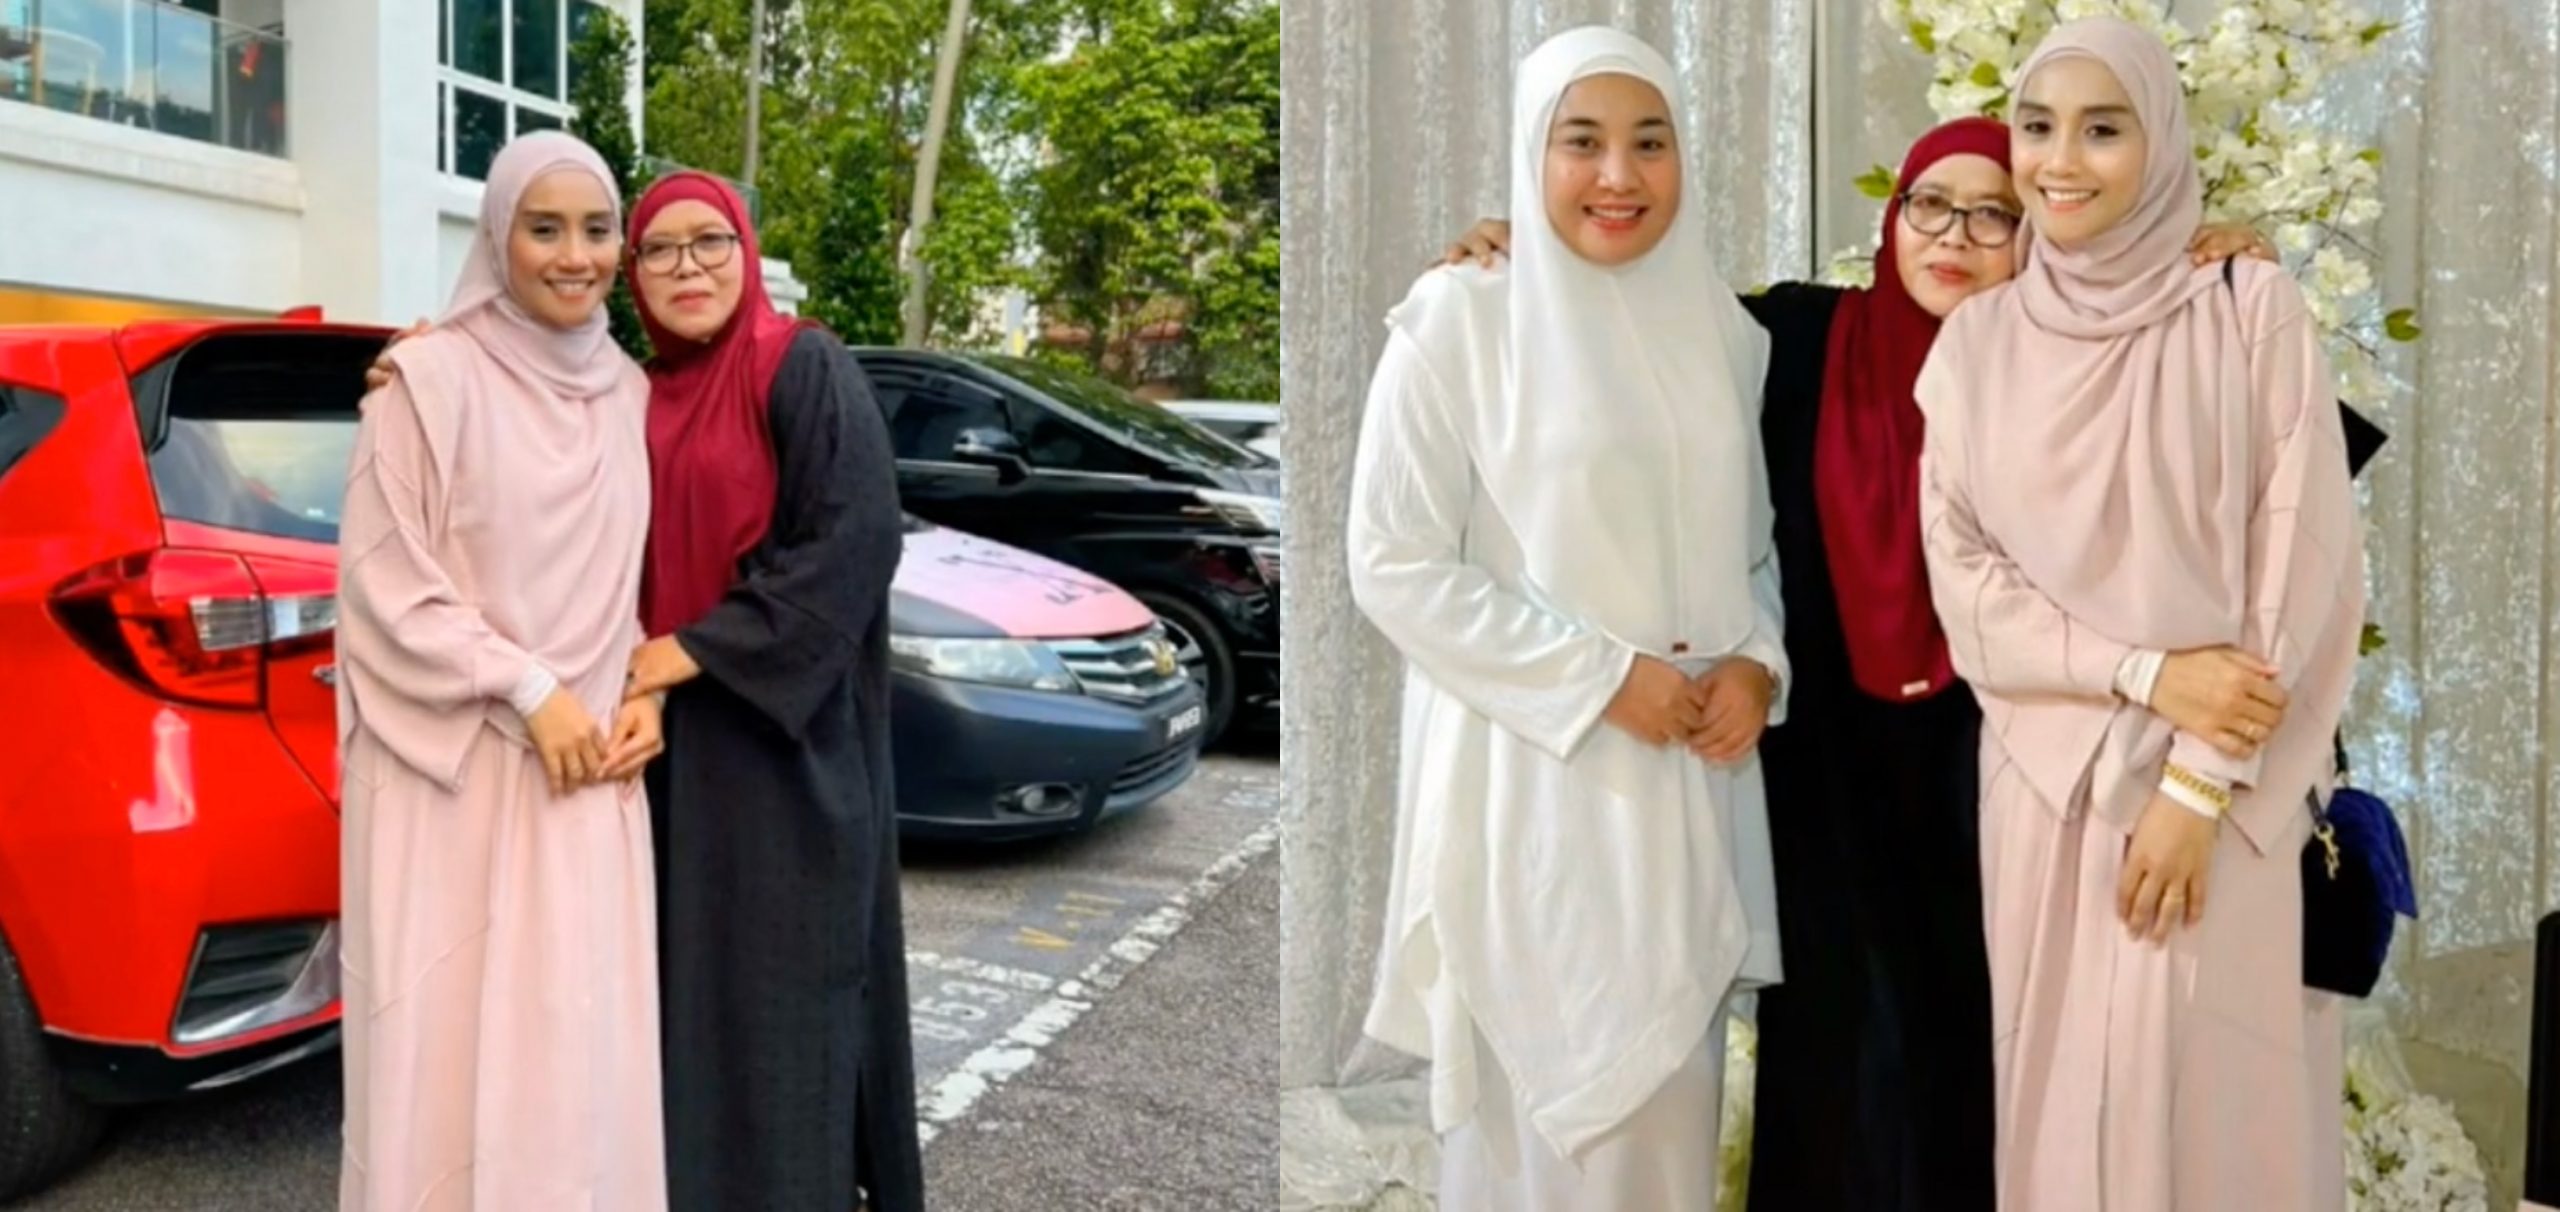 Muat Naik Foto Bersama Wan Sharmila, Ibu Shuib Tulis Caption Bagi Hint? – ‘Biar Gambar Berbicara’ 1